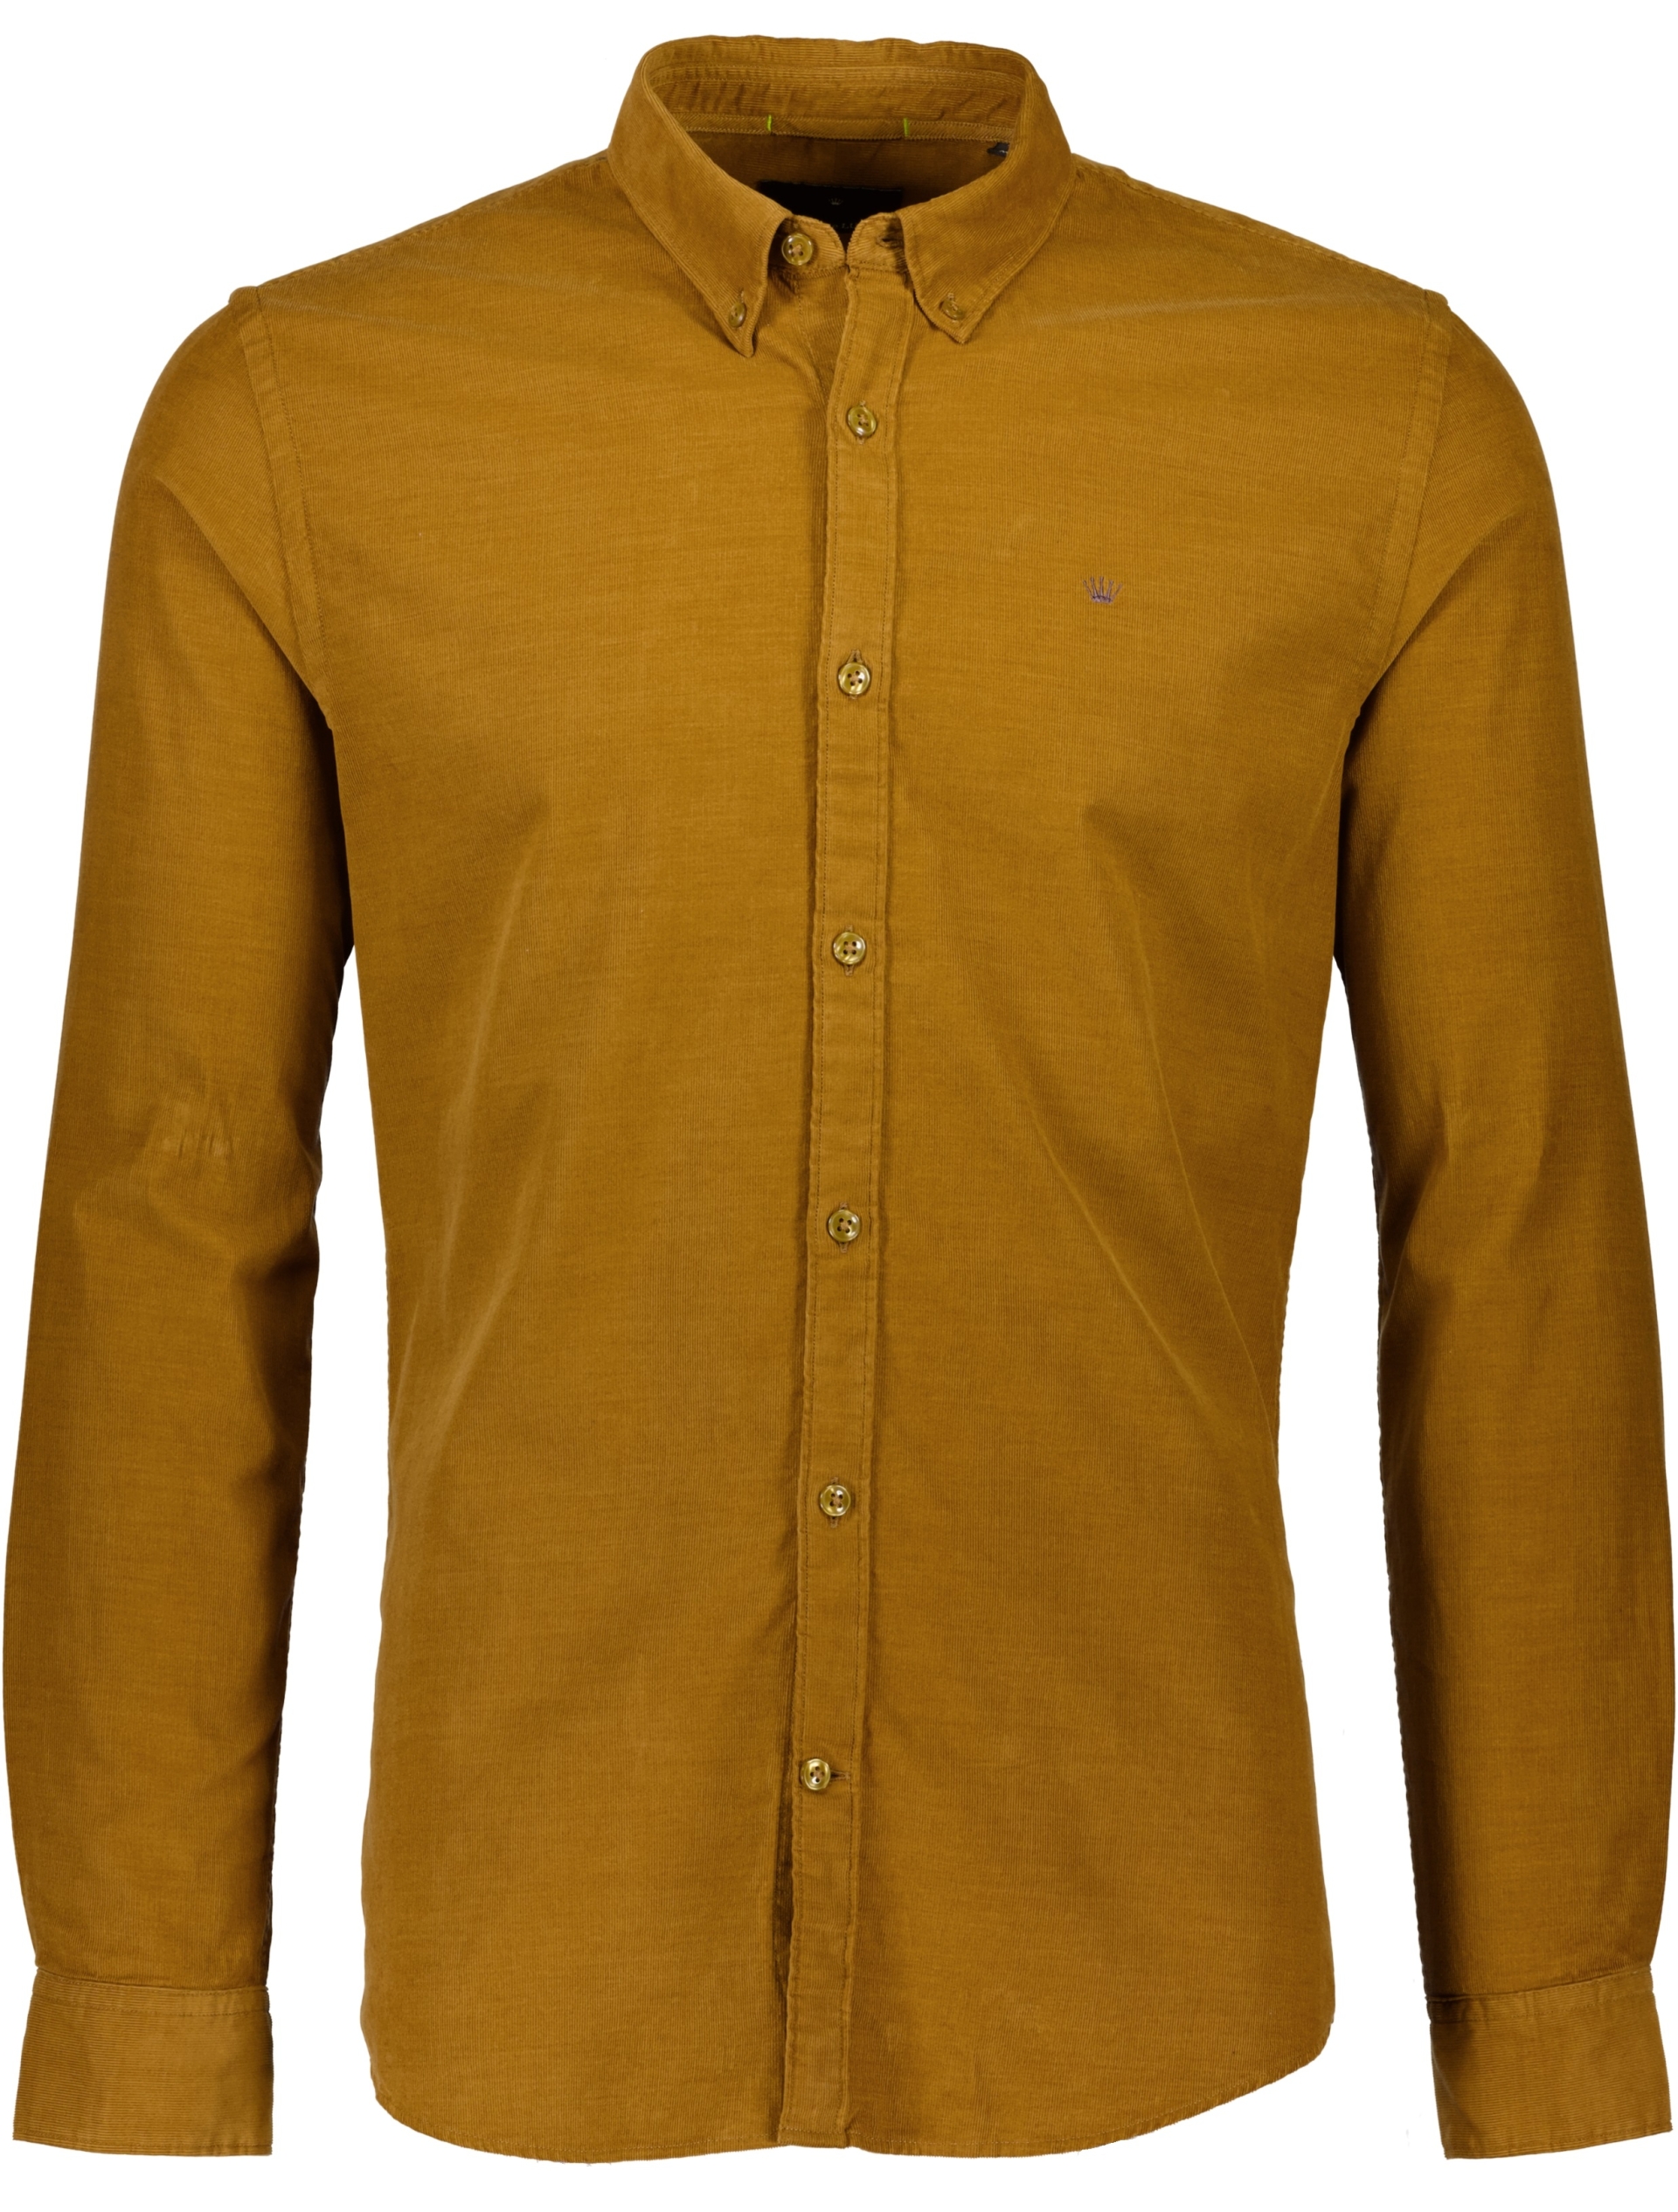 Junk de Luxe Corduroy skjorta brun / light brown